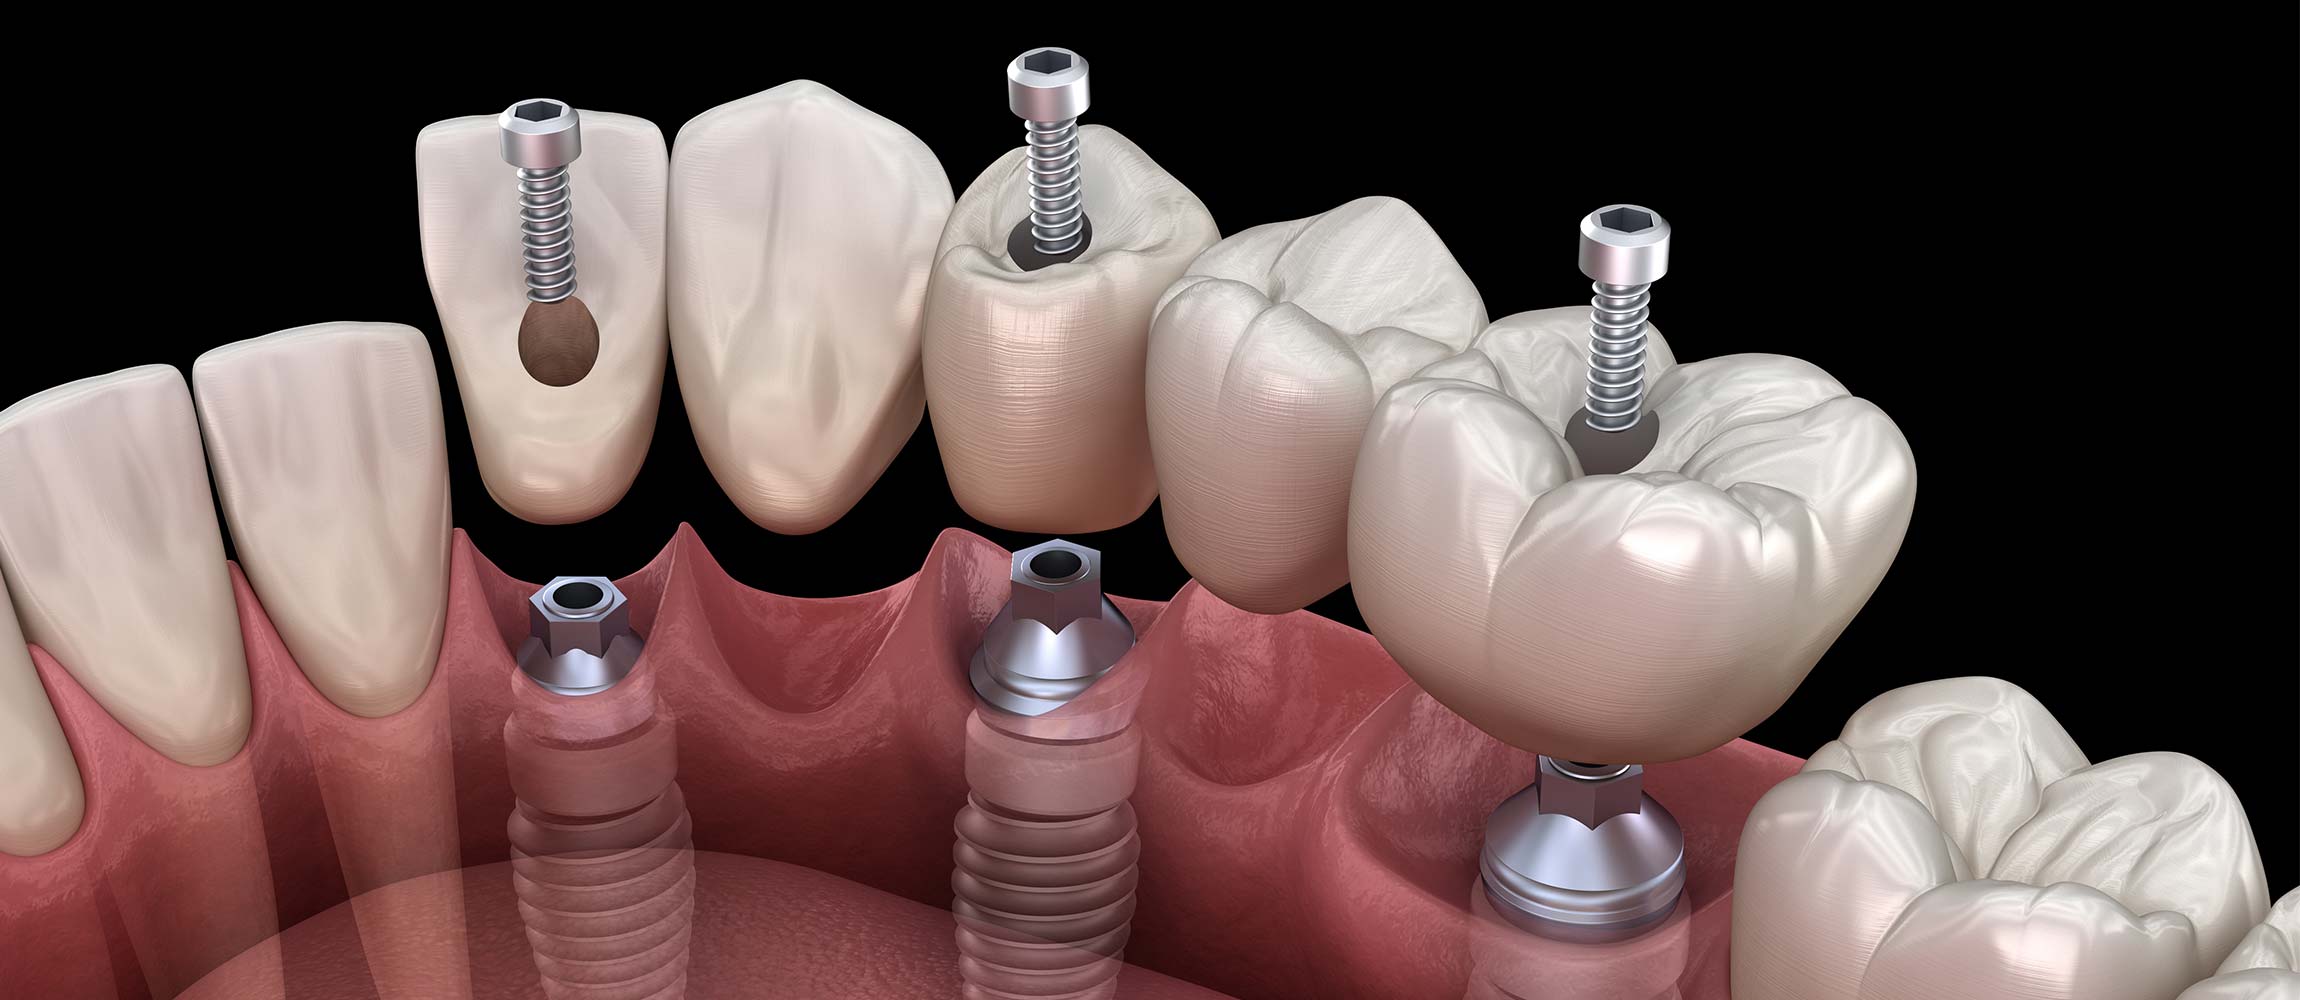 Mockup 3D de implantes dentales puente